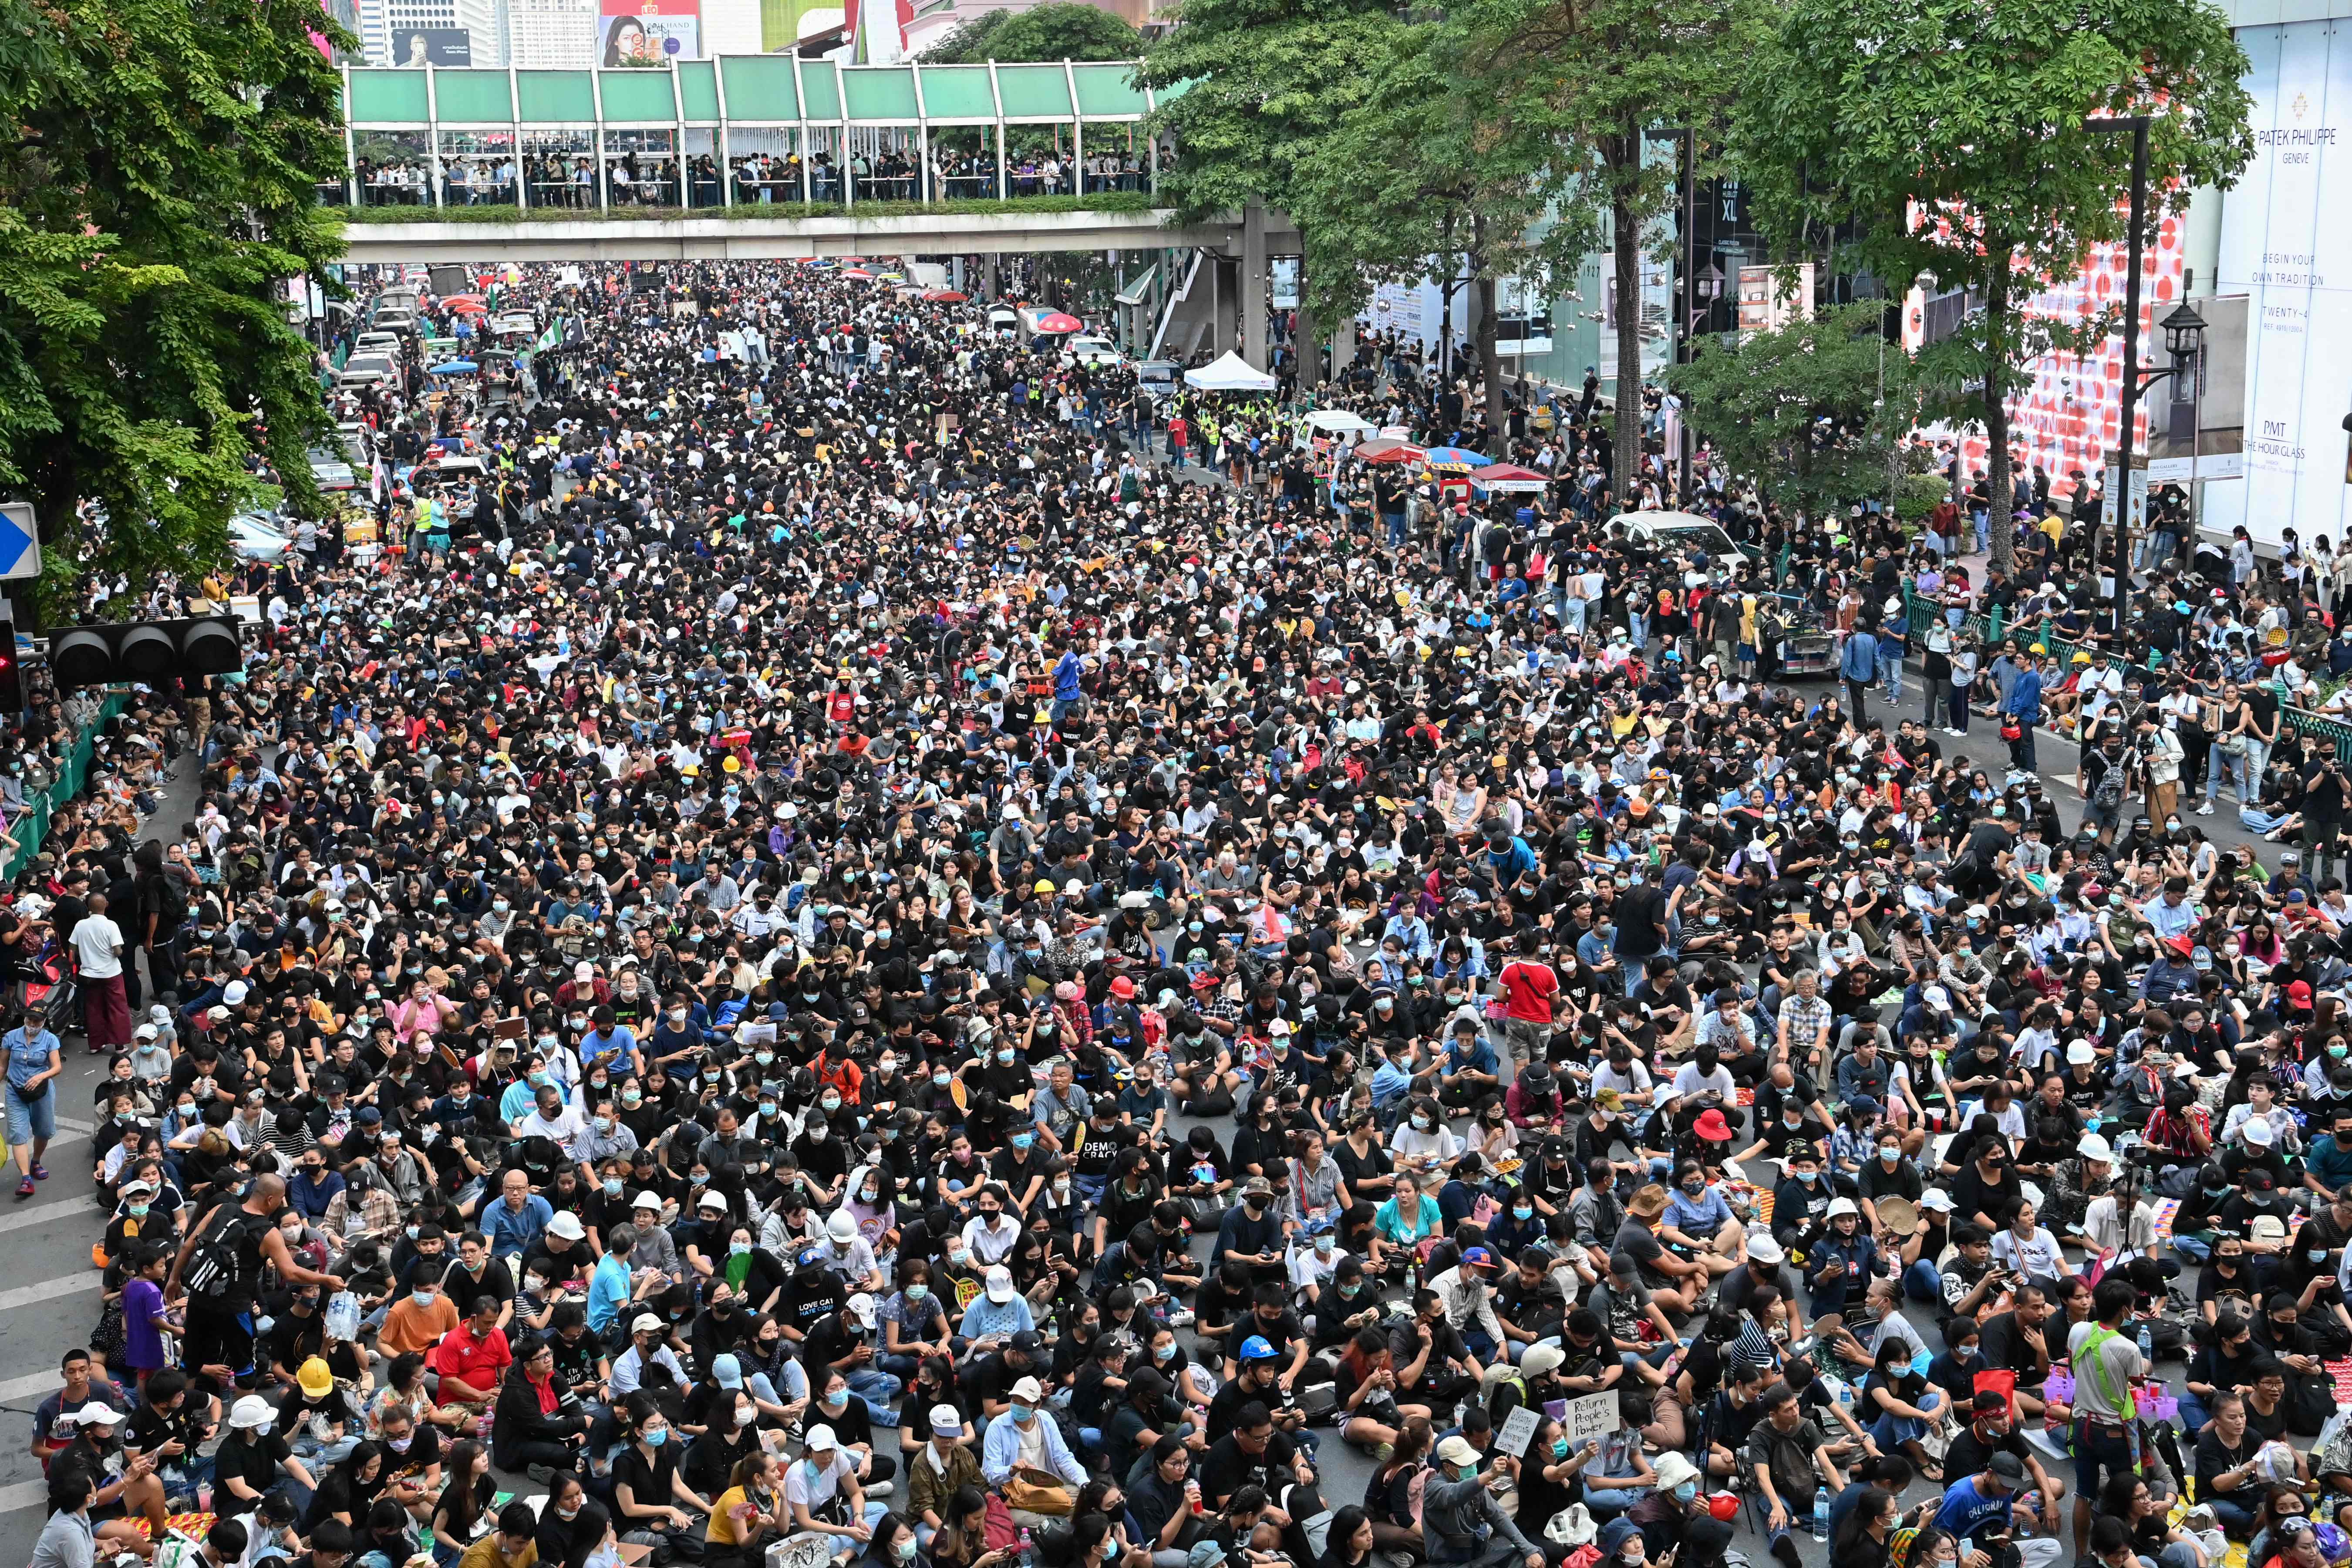 曼谷主要街道挤满了反政府示威的群众。